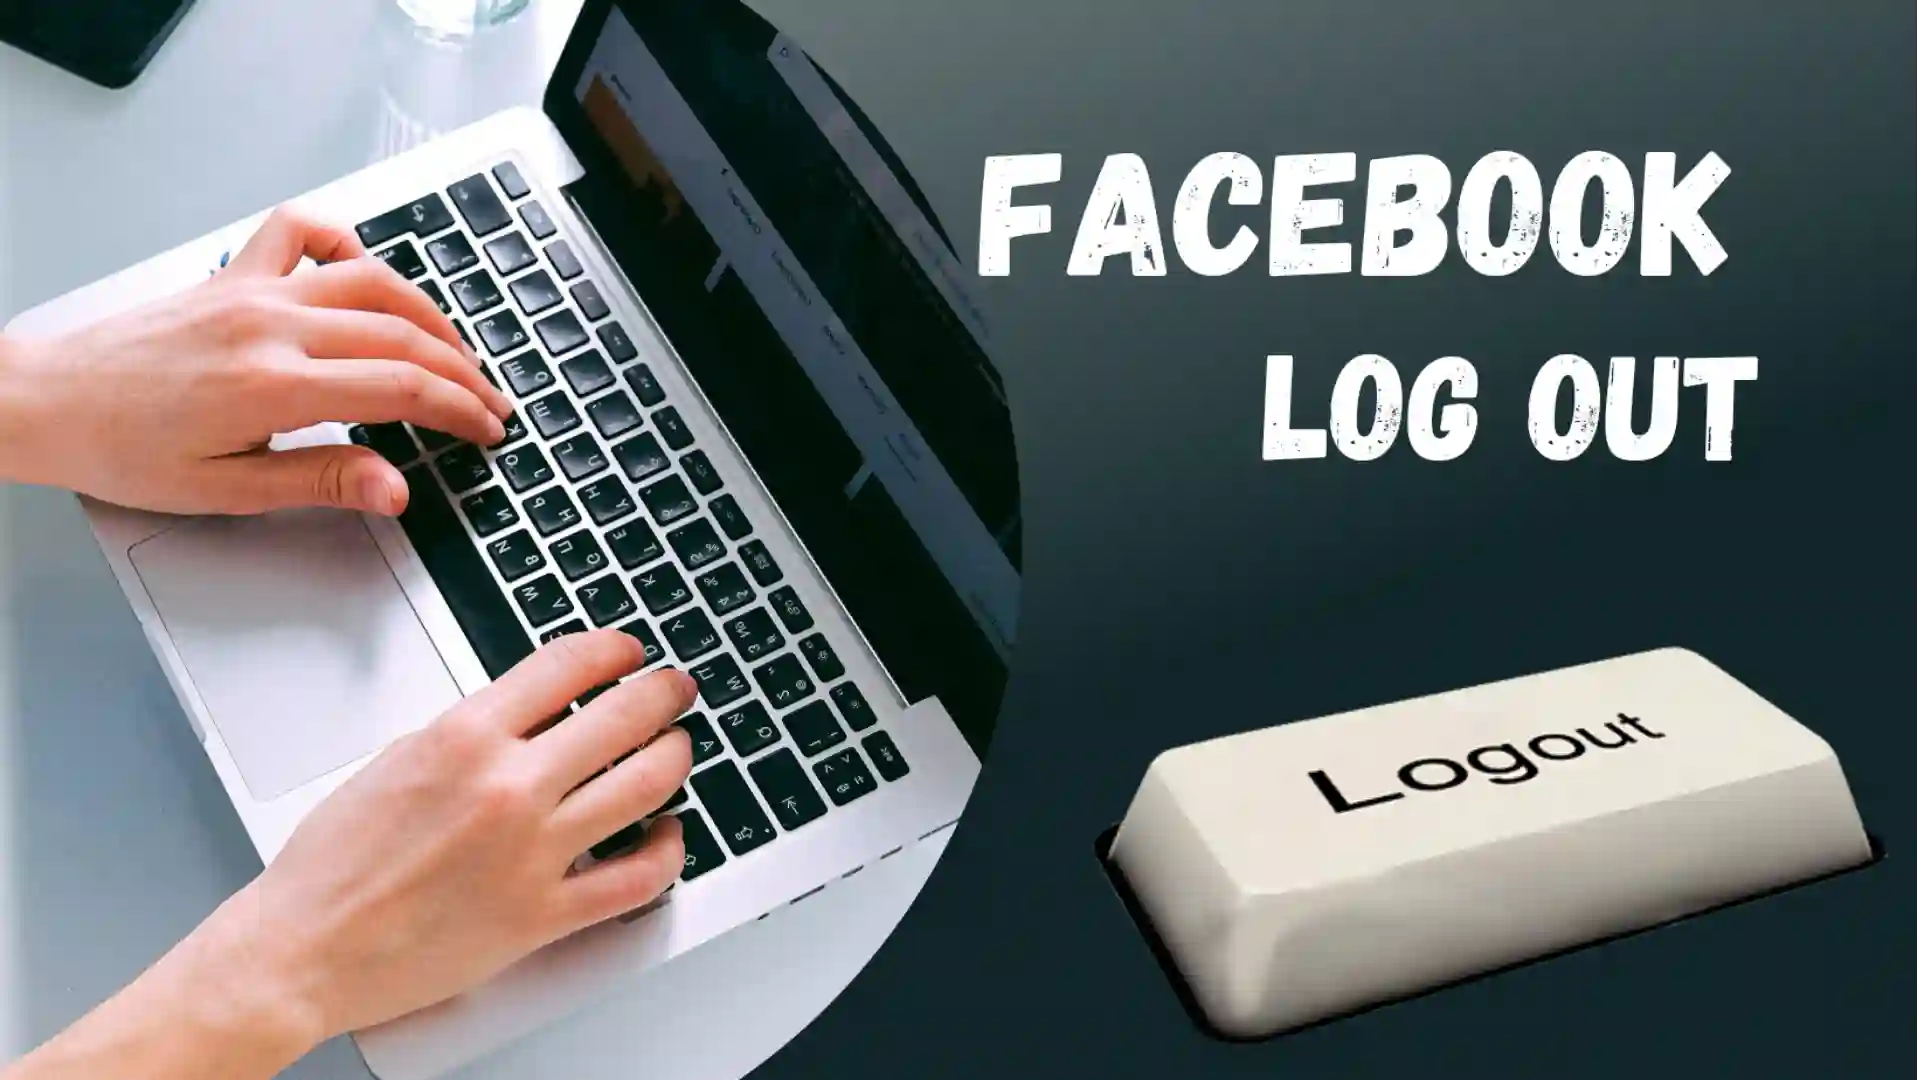 Facebook-logout-kaise-kare-laptop-me